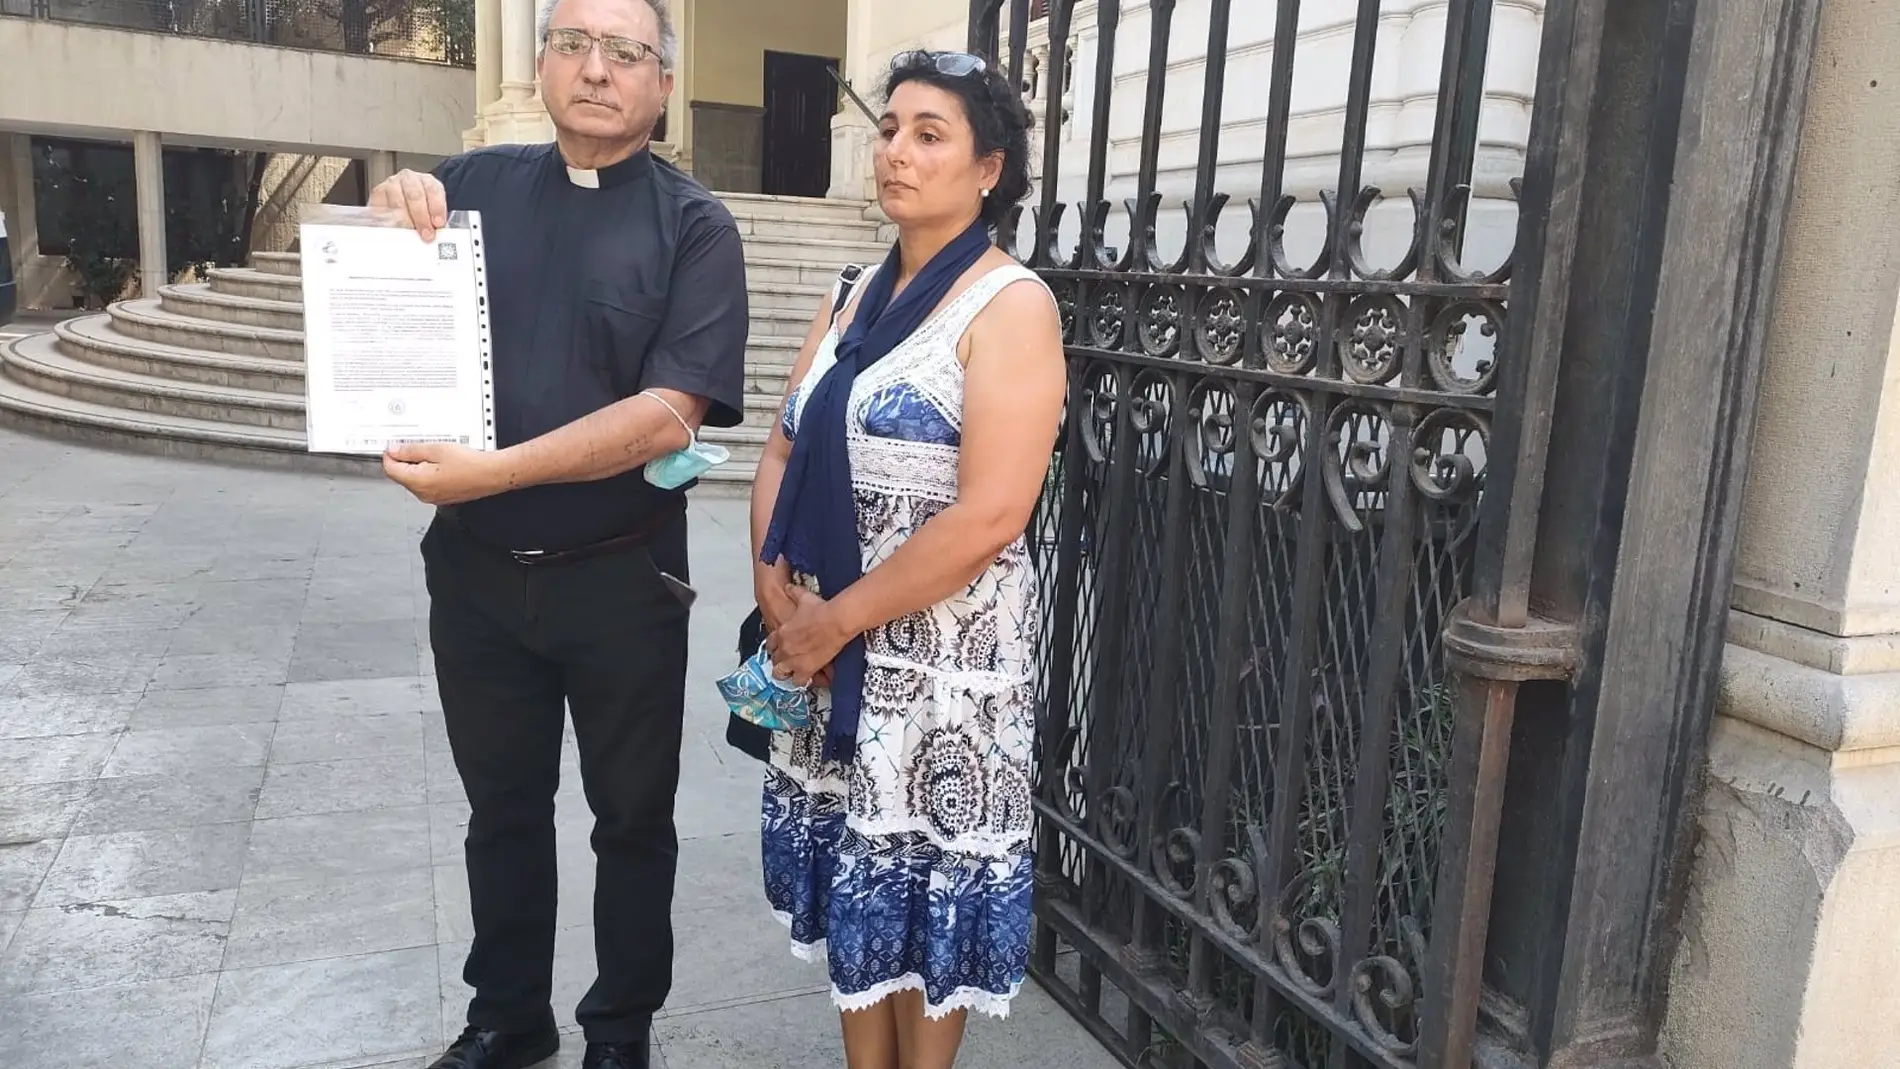 Asociaciones ven "racismo" con la familia del detenido por el crimen de Íllora y piden que vuelva al pueblo